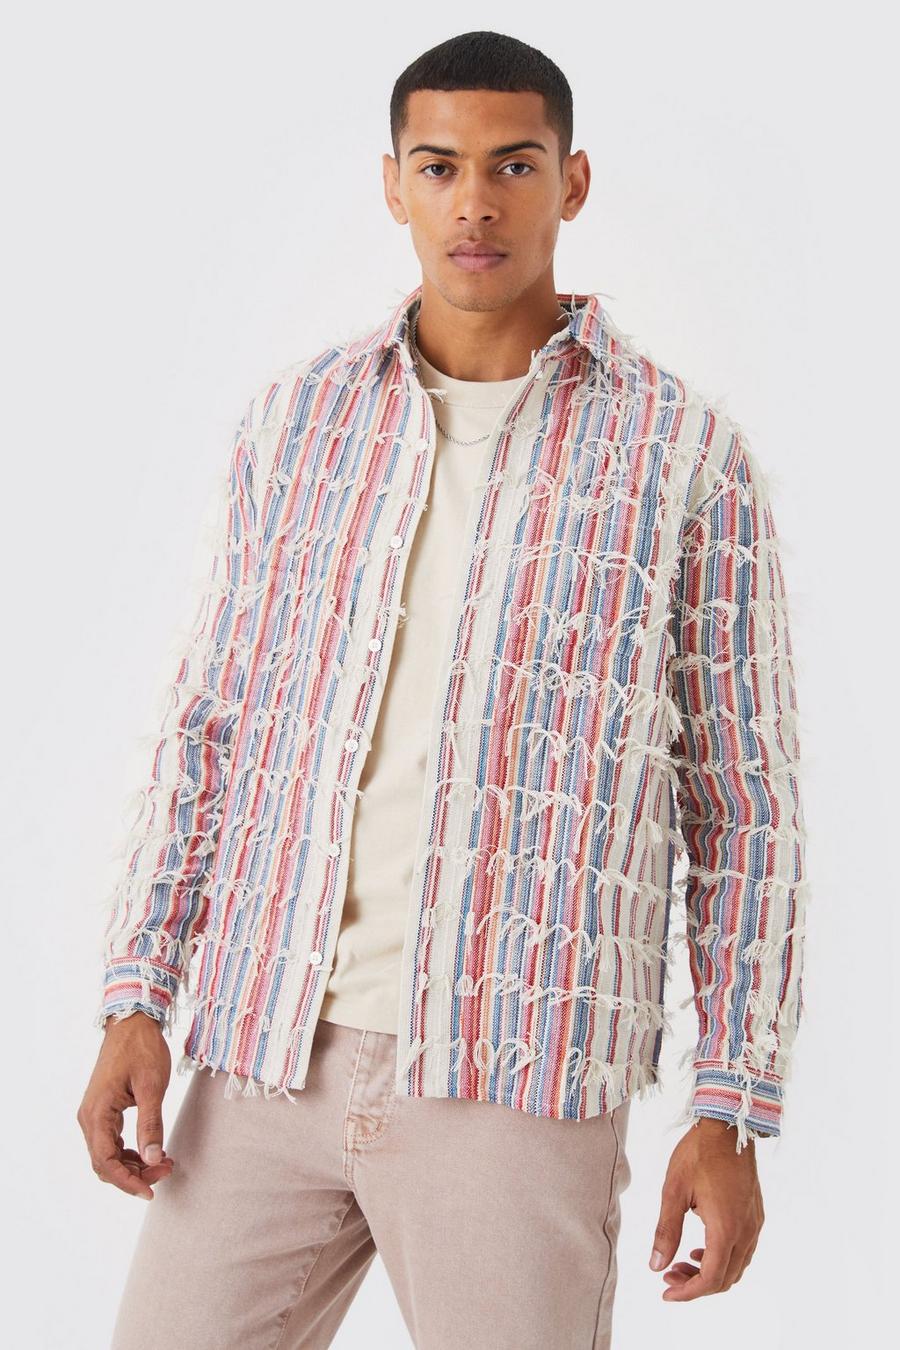 Fringe Textured Multi Colored Shirt Jacket